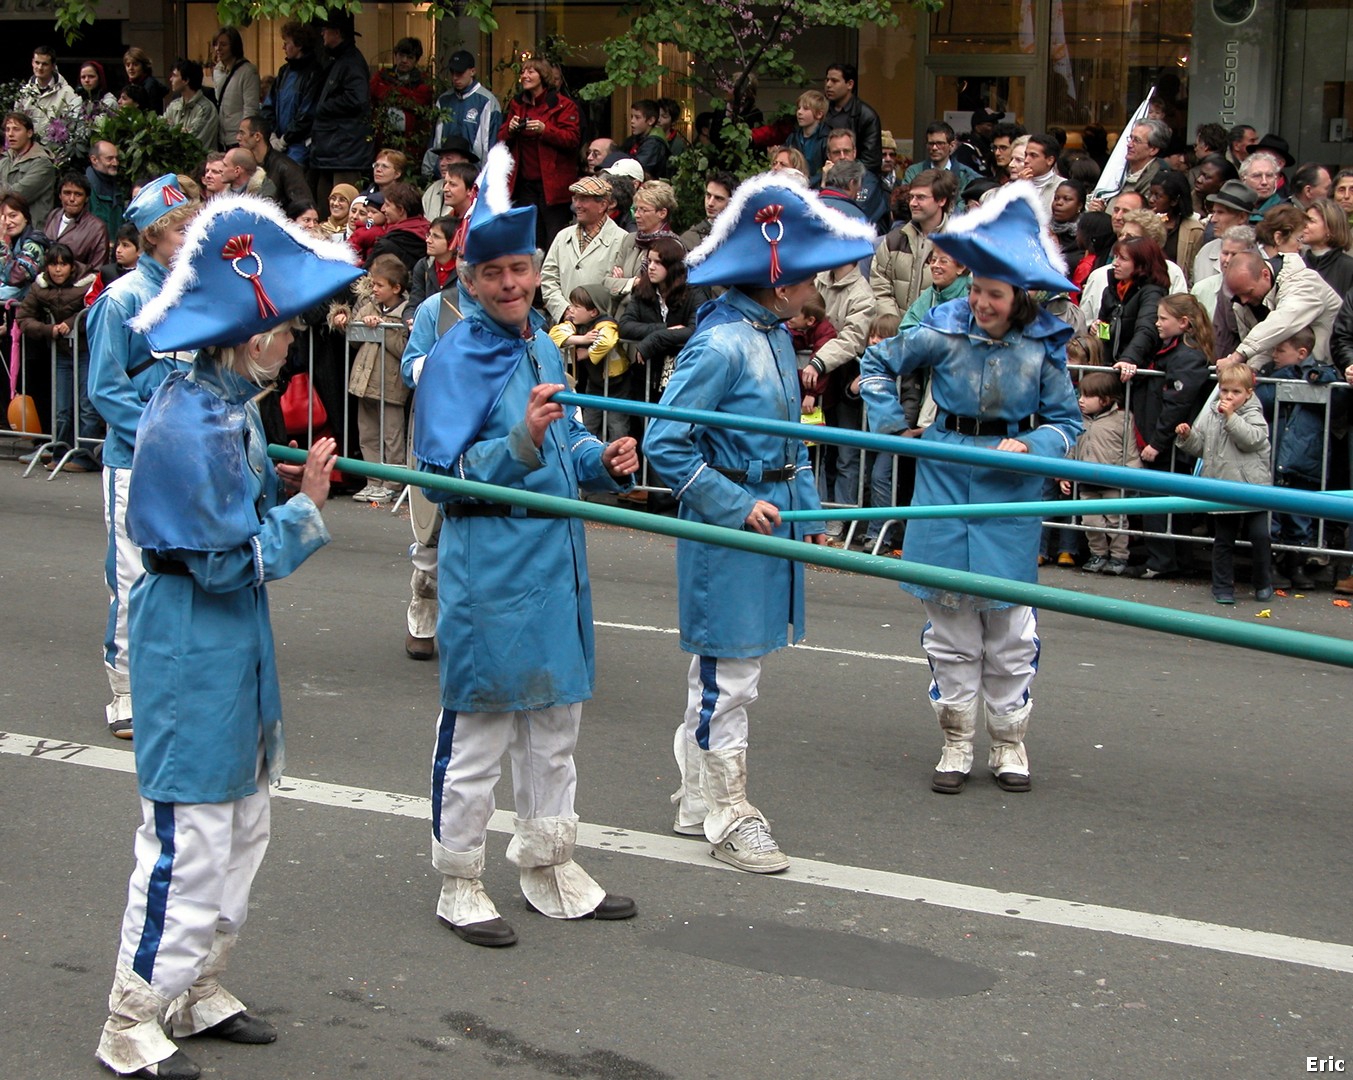  Zinneke Parade